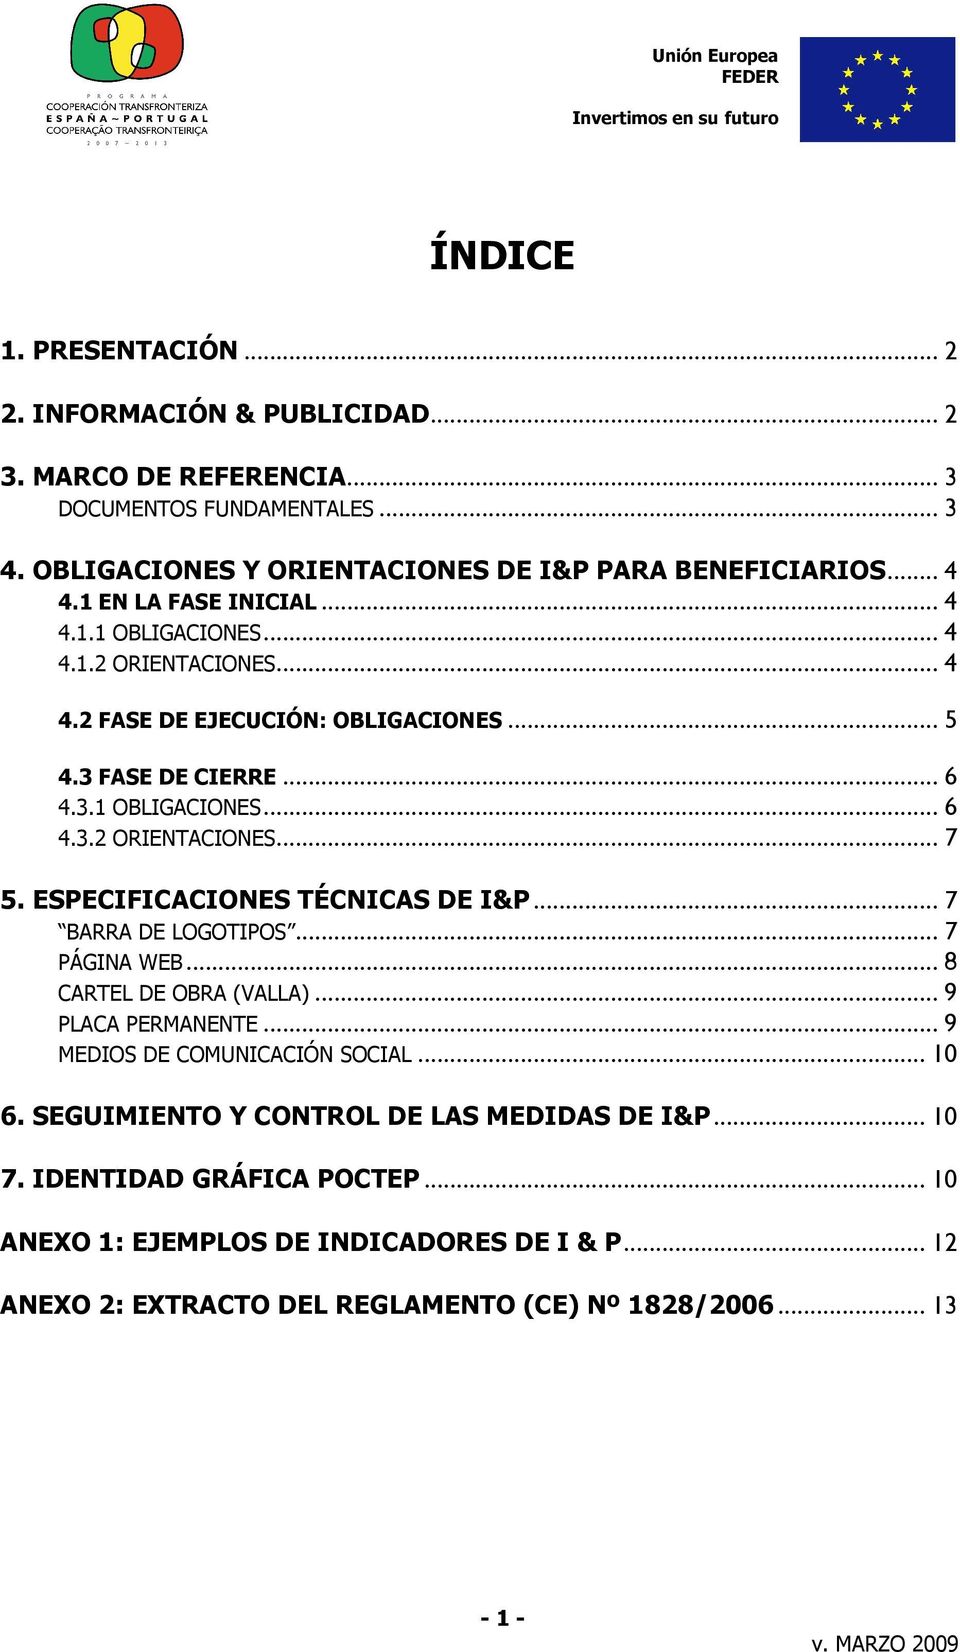 ESPECIFICACIONES TÉCNICAS DE I&P... 7 BARRA DE LOGOTIPOS... 7 PÁGINA WEB... 8 CARTEL DE OBRA (VALLA)... 9 PLACA PERMANENTE... 9 MEDIOS DE COMUNICACIÓN SOCIAL... 10 6.